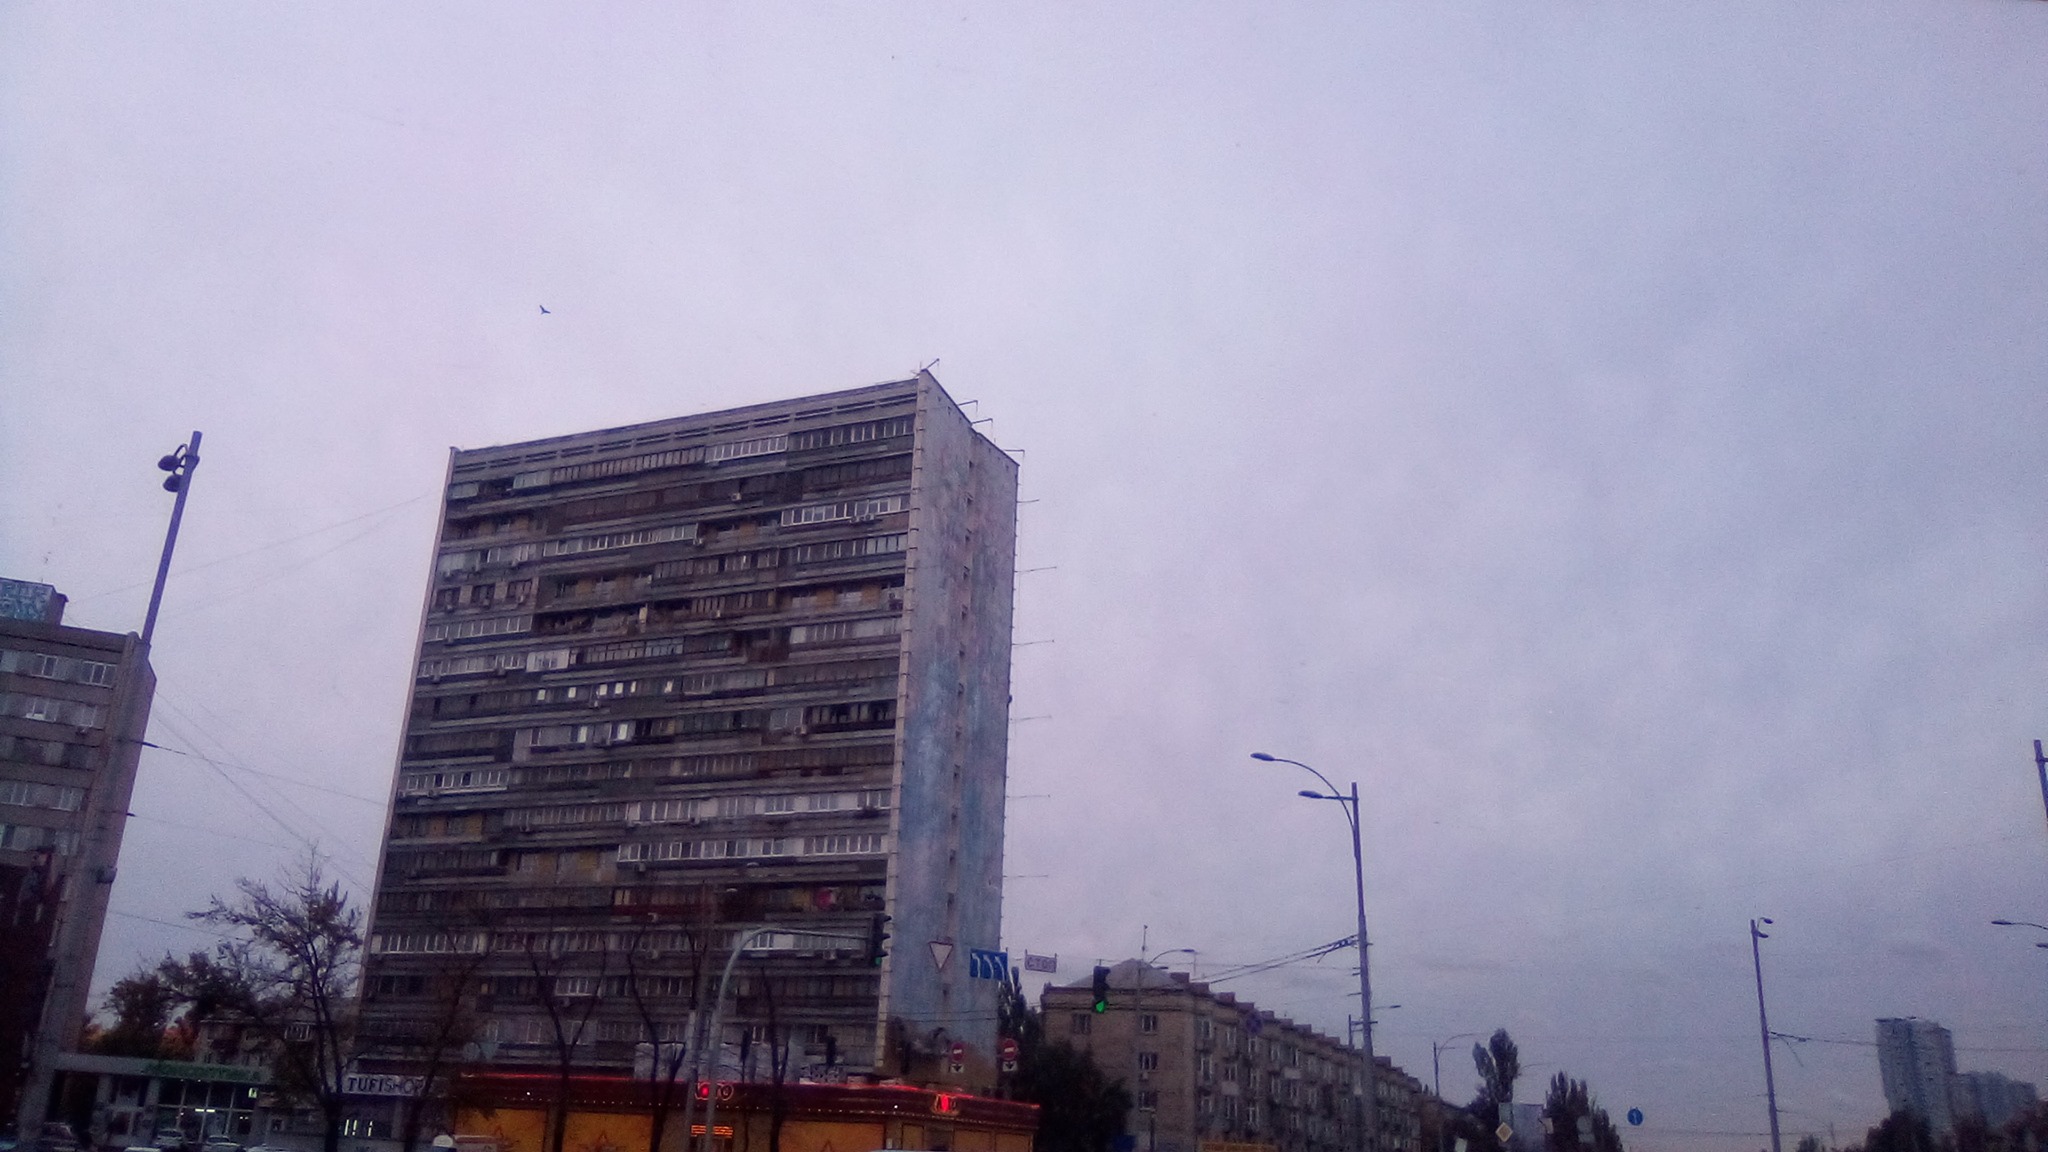 Красочный мурал на Дарницкой площади в Киеве уничтожают (фото)